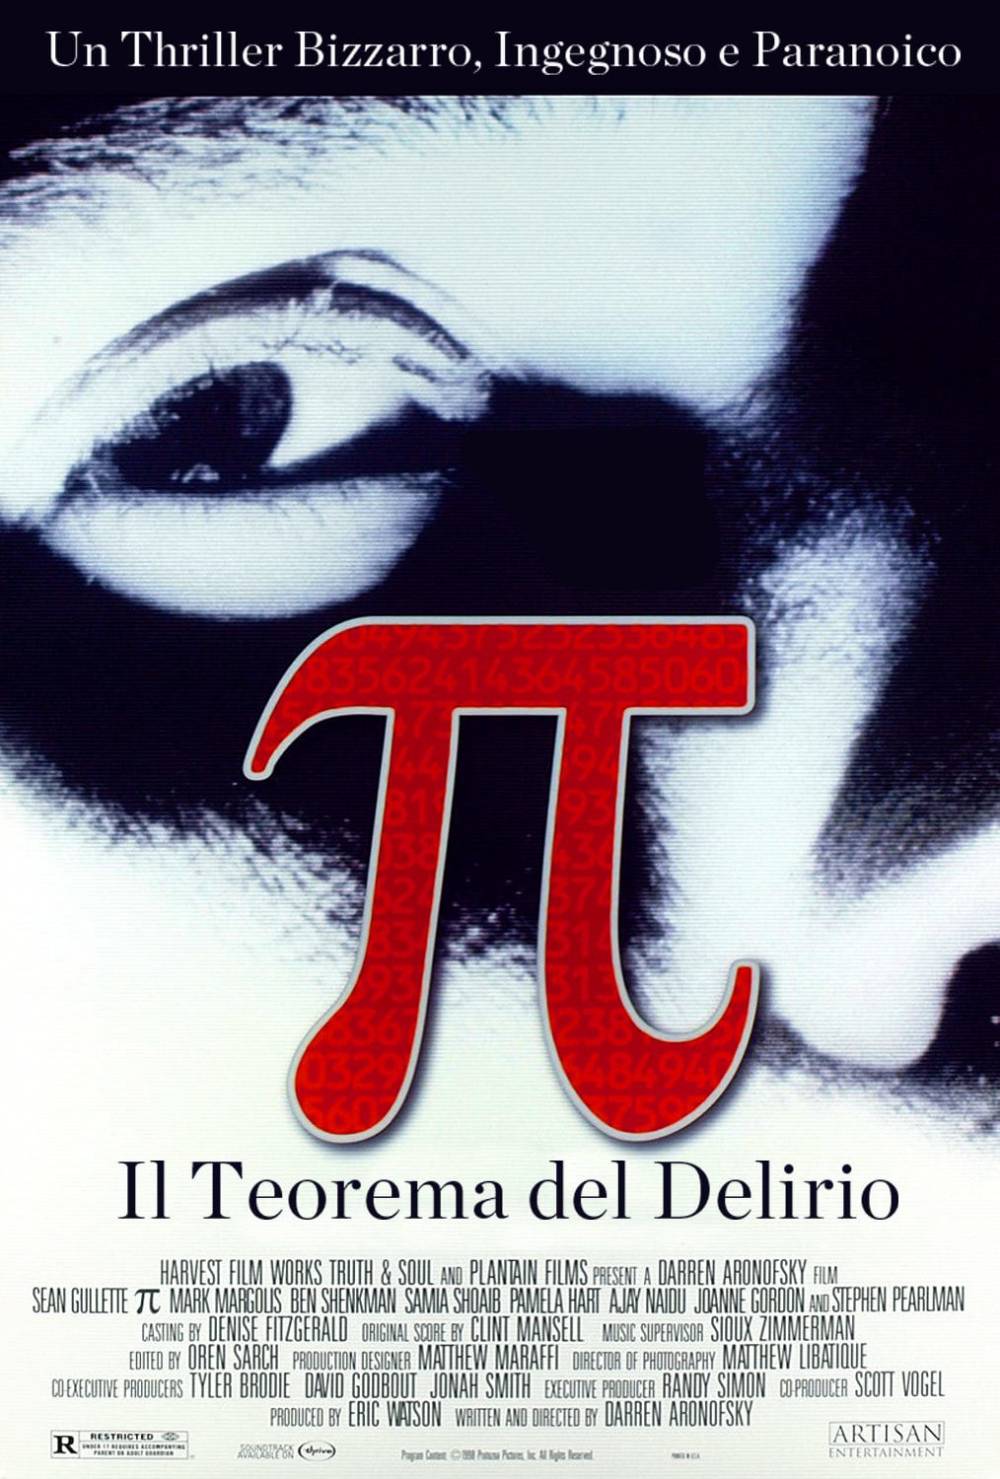 [RECENSIONE] Pi Greco – Il teorema del delirio (Darren Aronofsky)